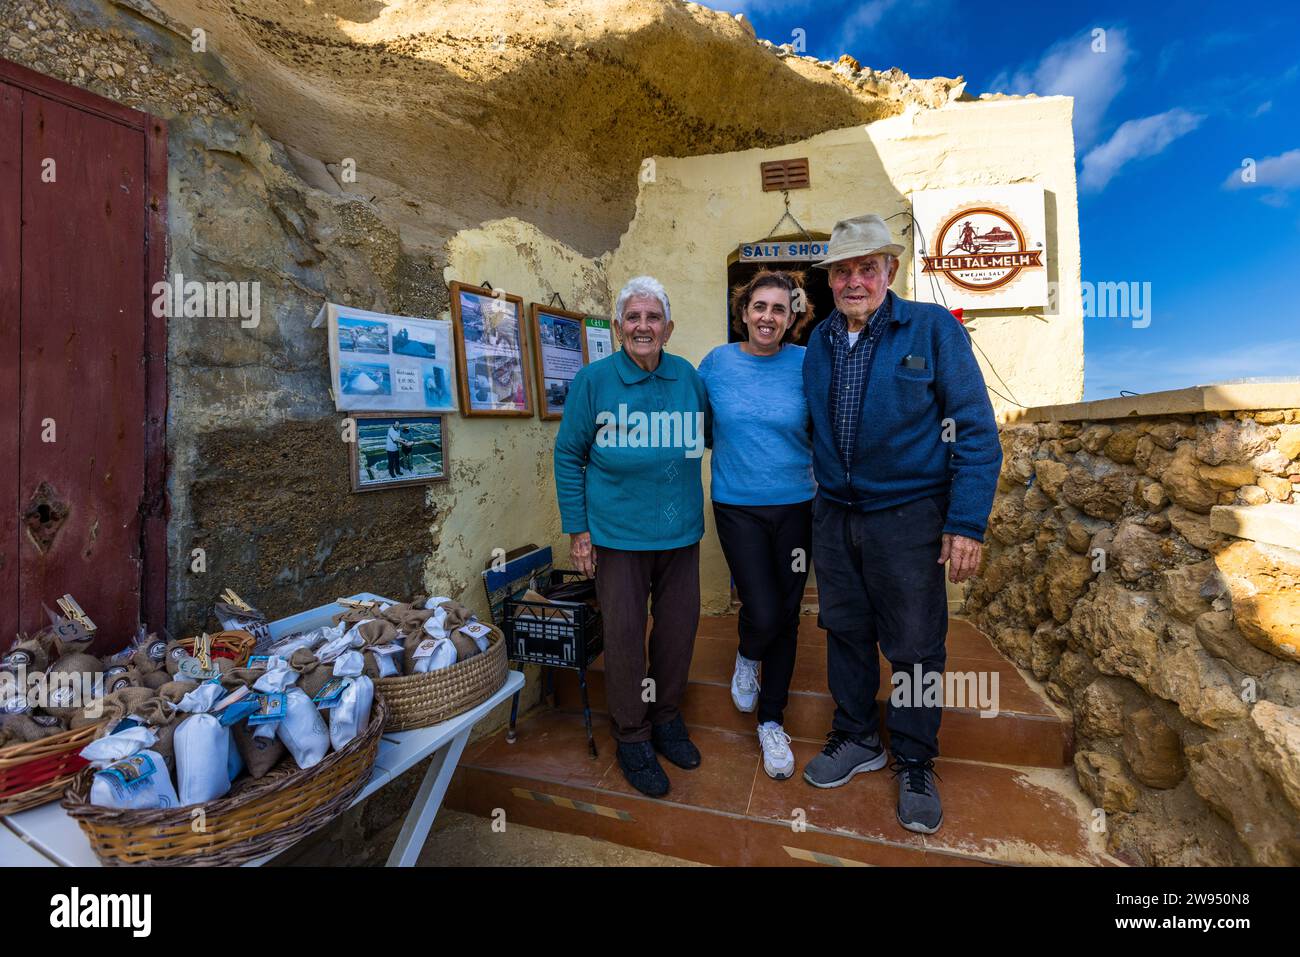 Rose et Mario Cini avec leur fille Joséphine Xuereb. Leur famille est la cinquième génération à diriger des marais salants sur Gozo dans la baie de Xwejni. Magasin de sel Leli Tal-Melh à Xwejni près de Marsalforn, Gozo, Malte Banque D'Images